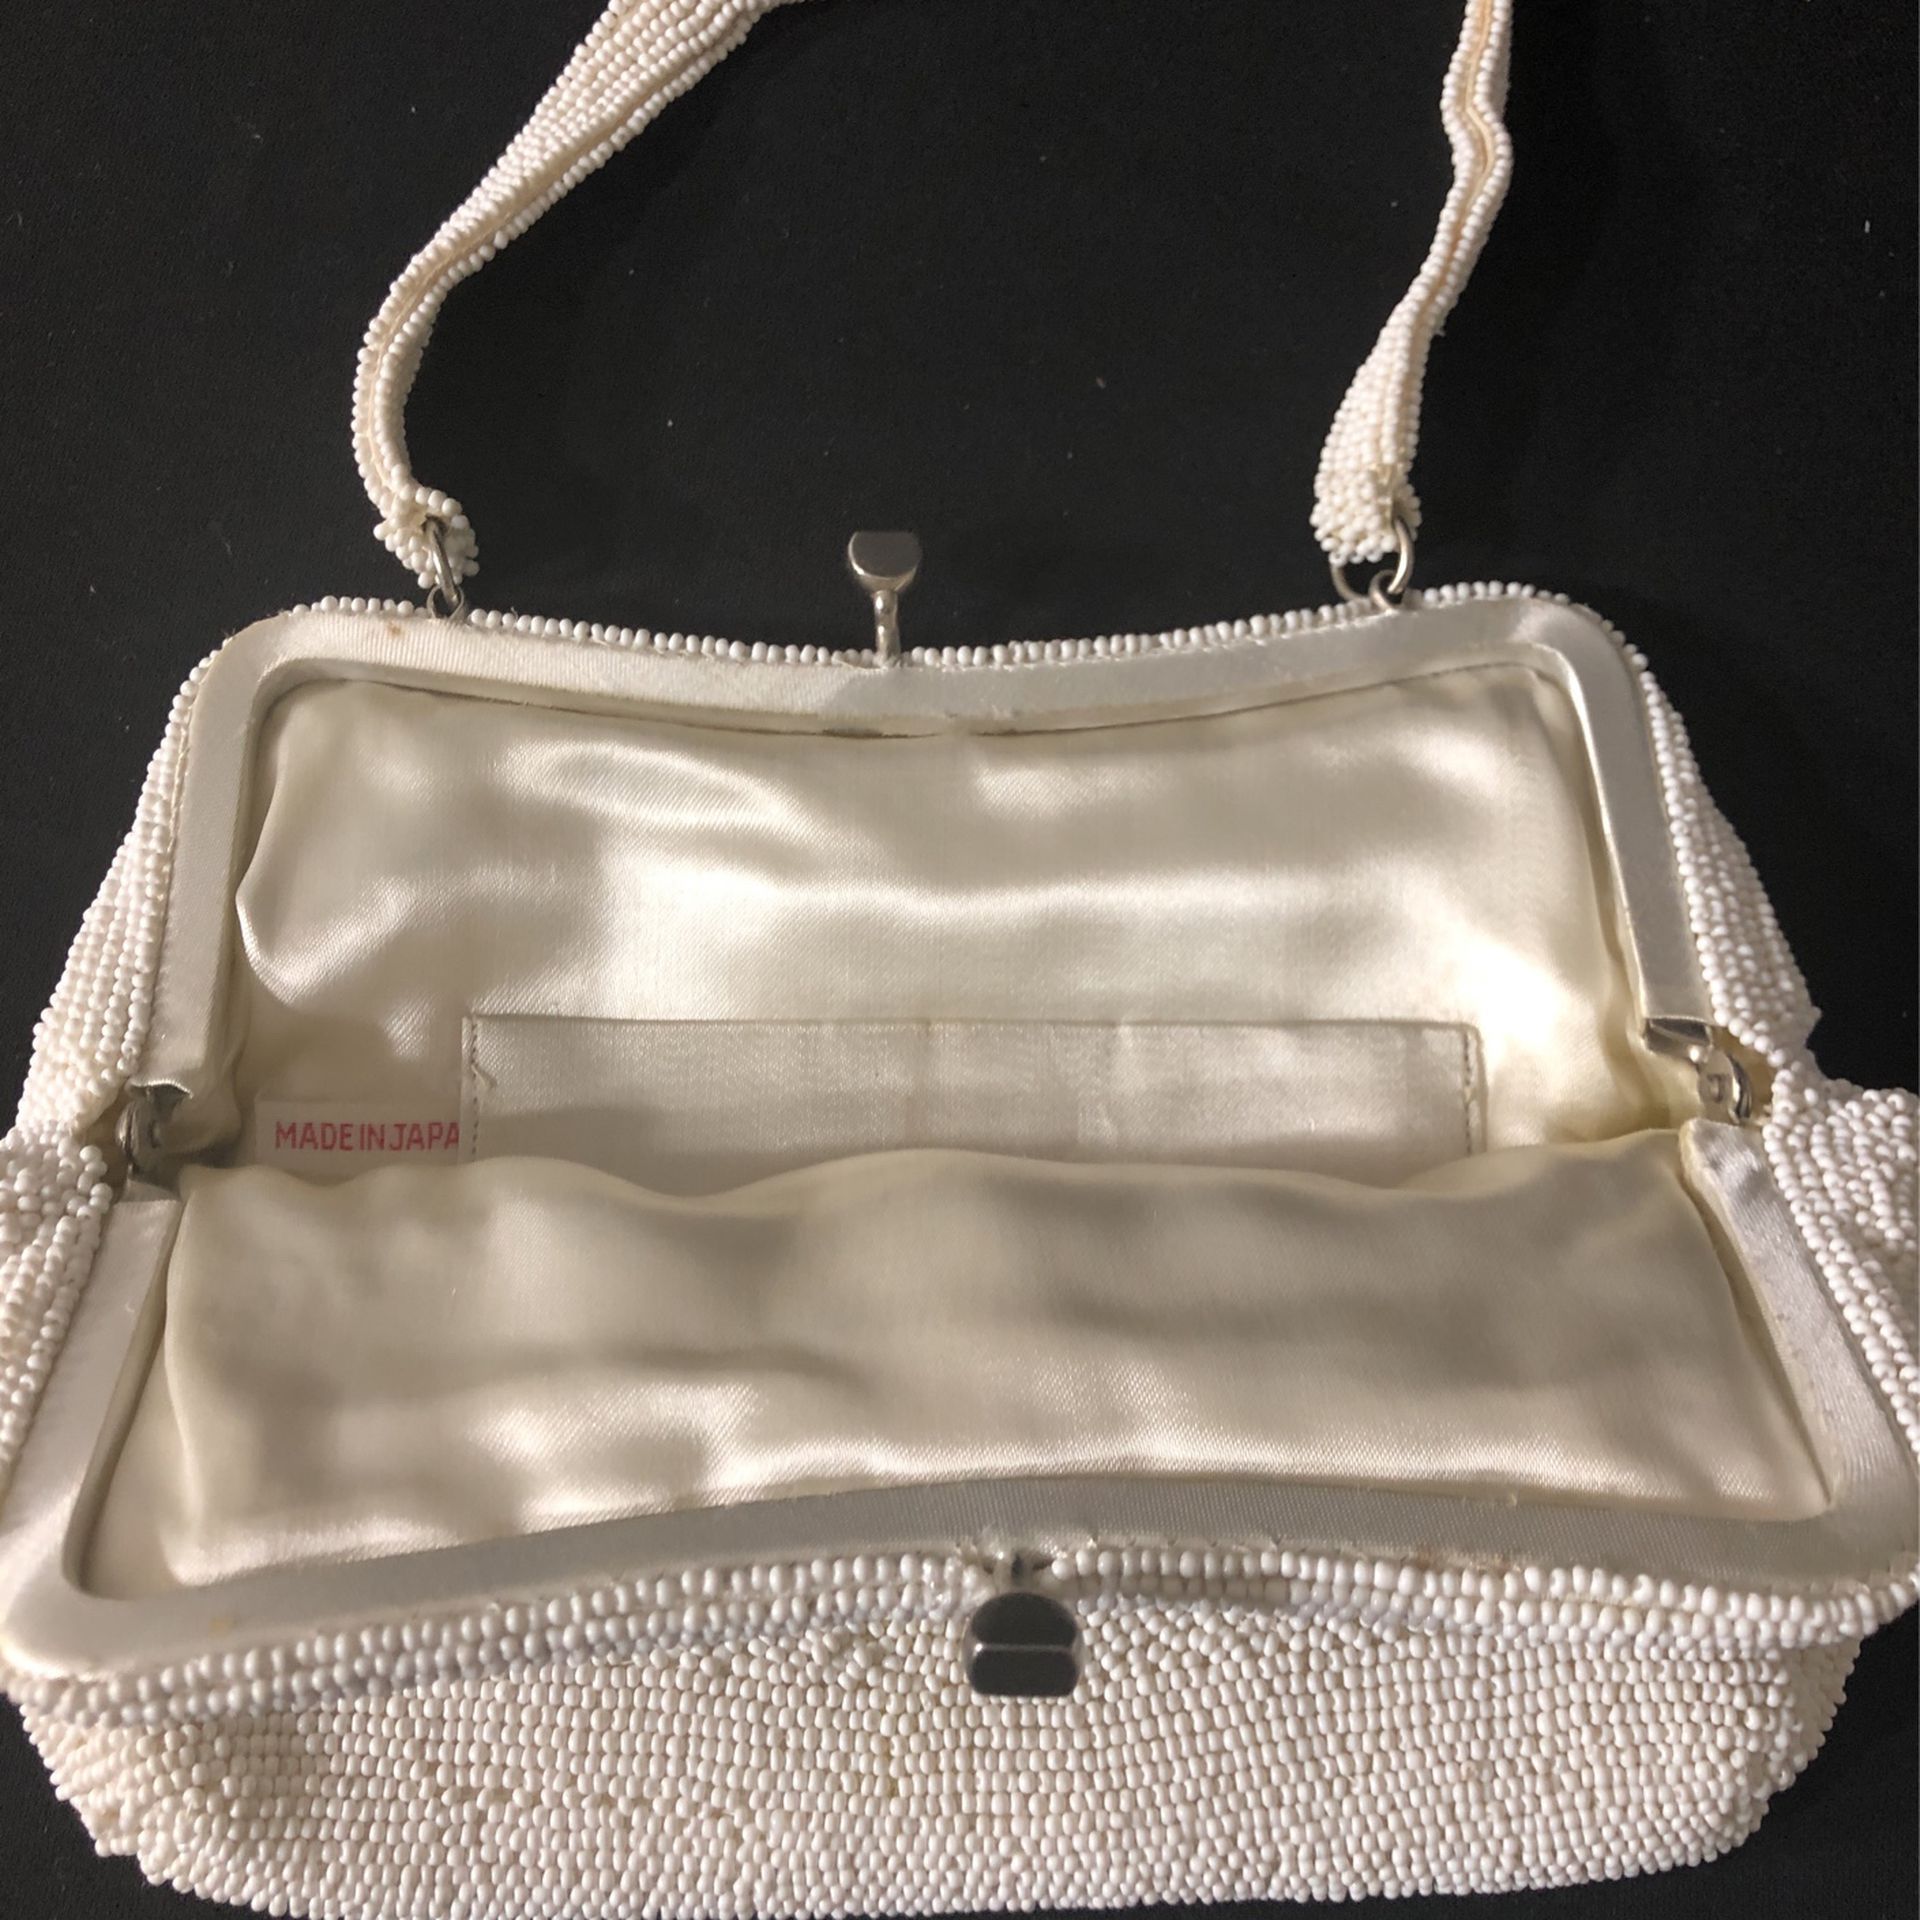 Vintage 90s Y2K Metallic Box Handbag/Purse for Sale in Peoria, IL - OfferUp